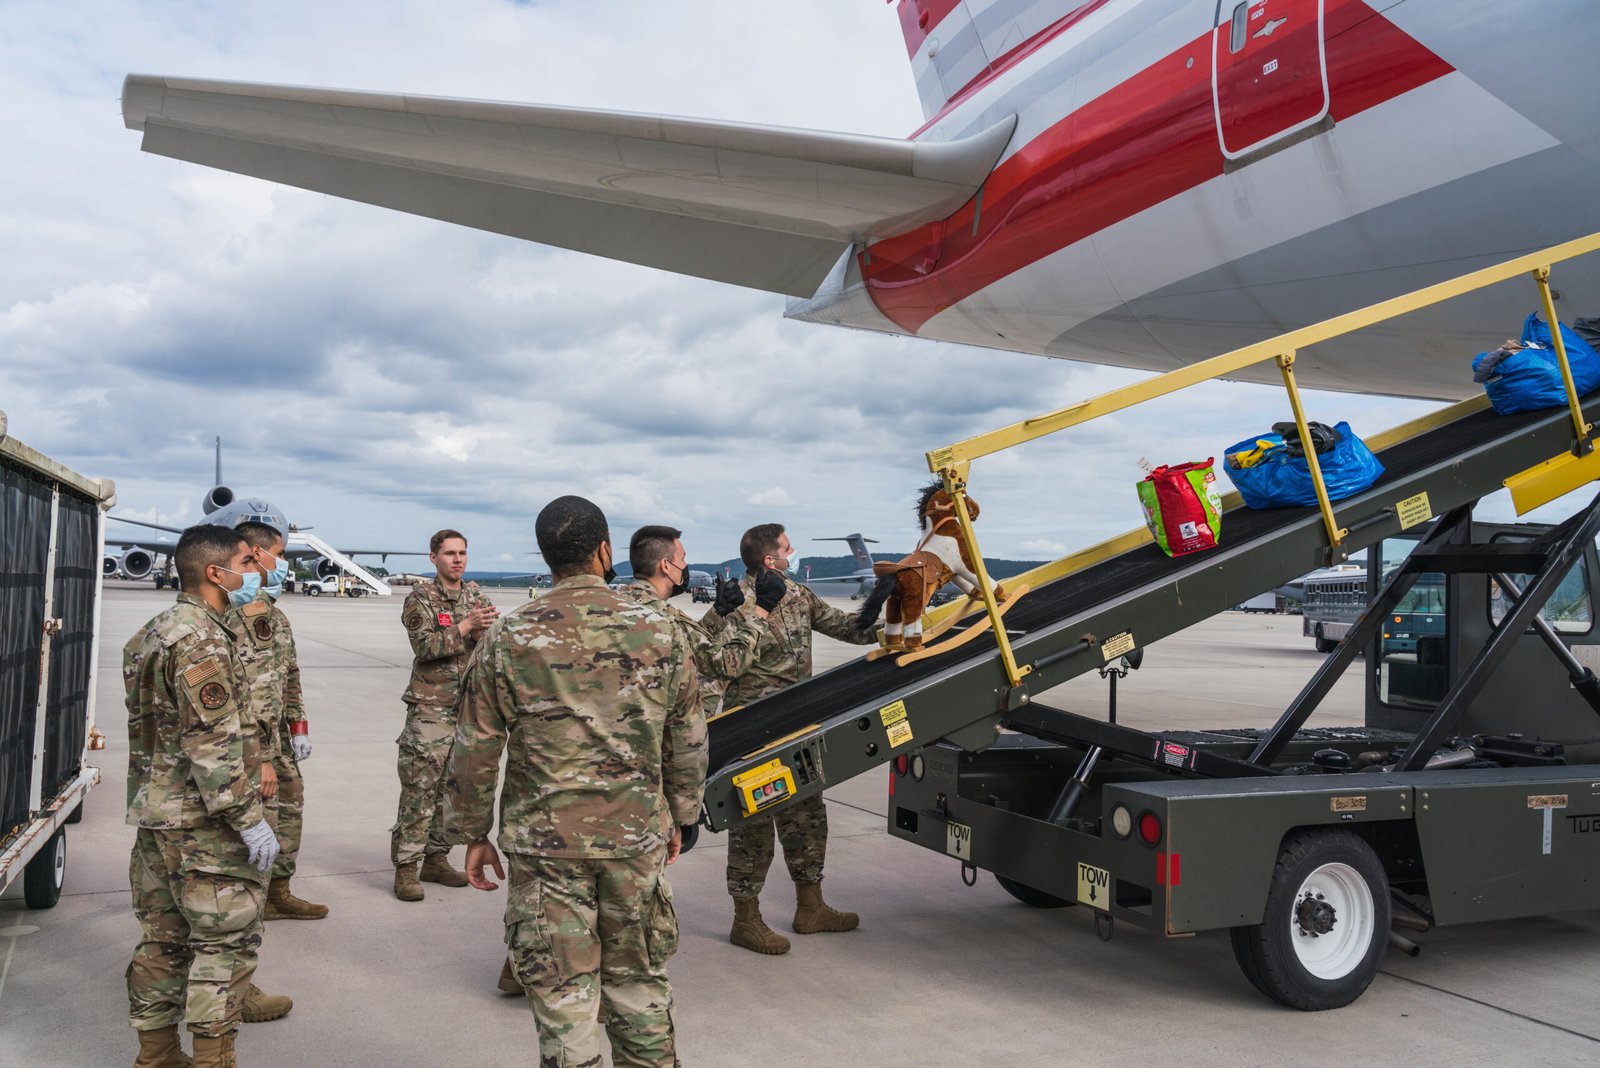 Equipaje siendo cargado en un avión de American Airlines en la base aérea de Ramstein tras la retirada de Afganistán. Foto: Donald Barnec - USAF